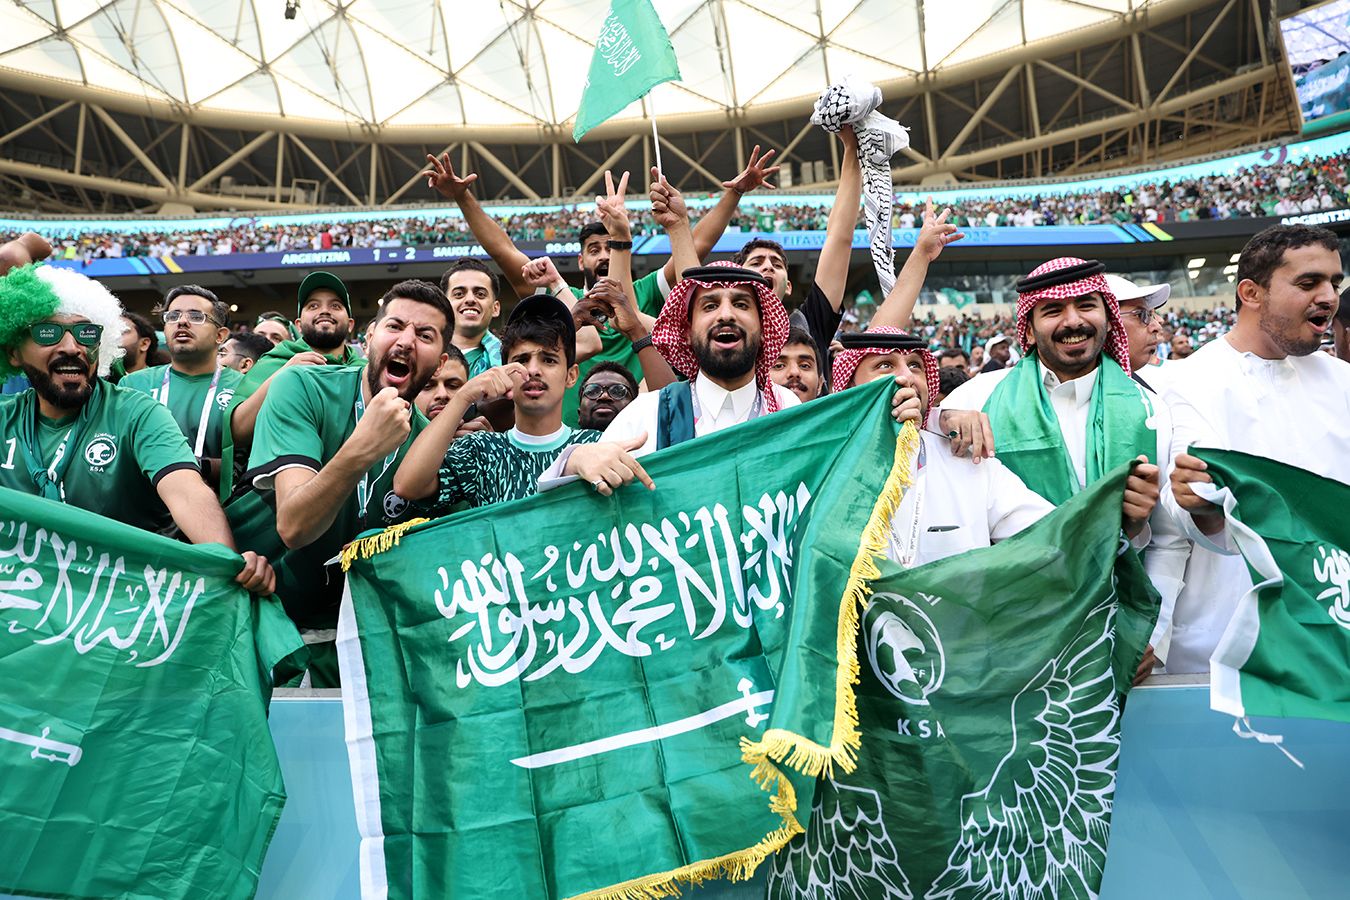 Сауд Арабиясы ұлттық құраманың жеңісіне байланысты демалыс жариялады